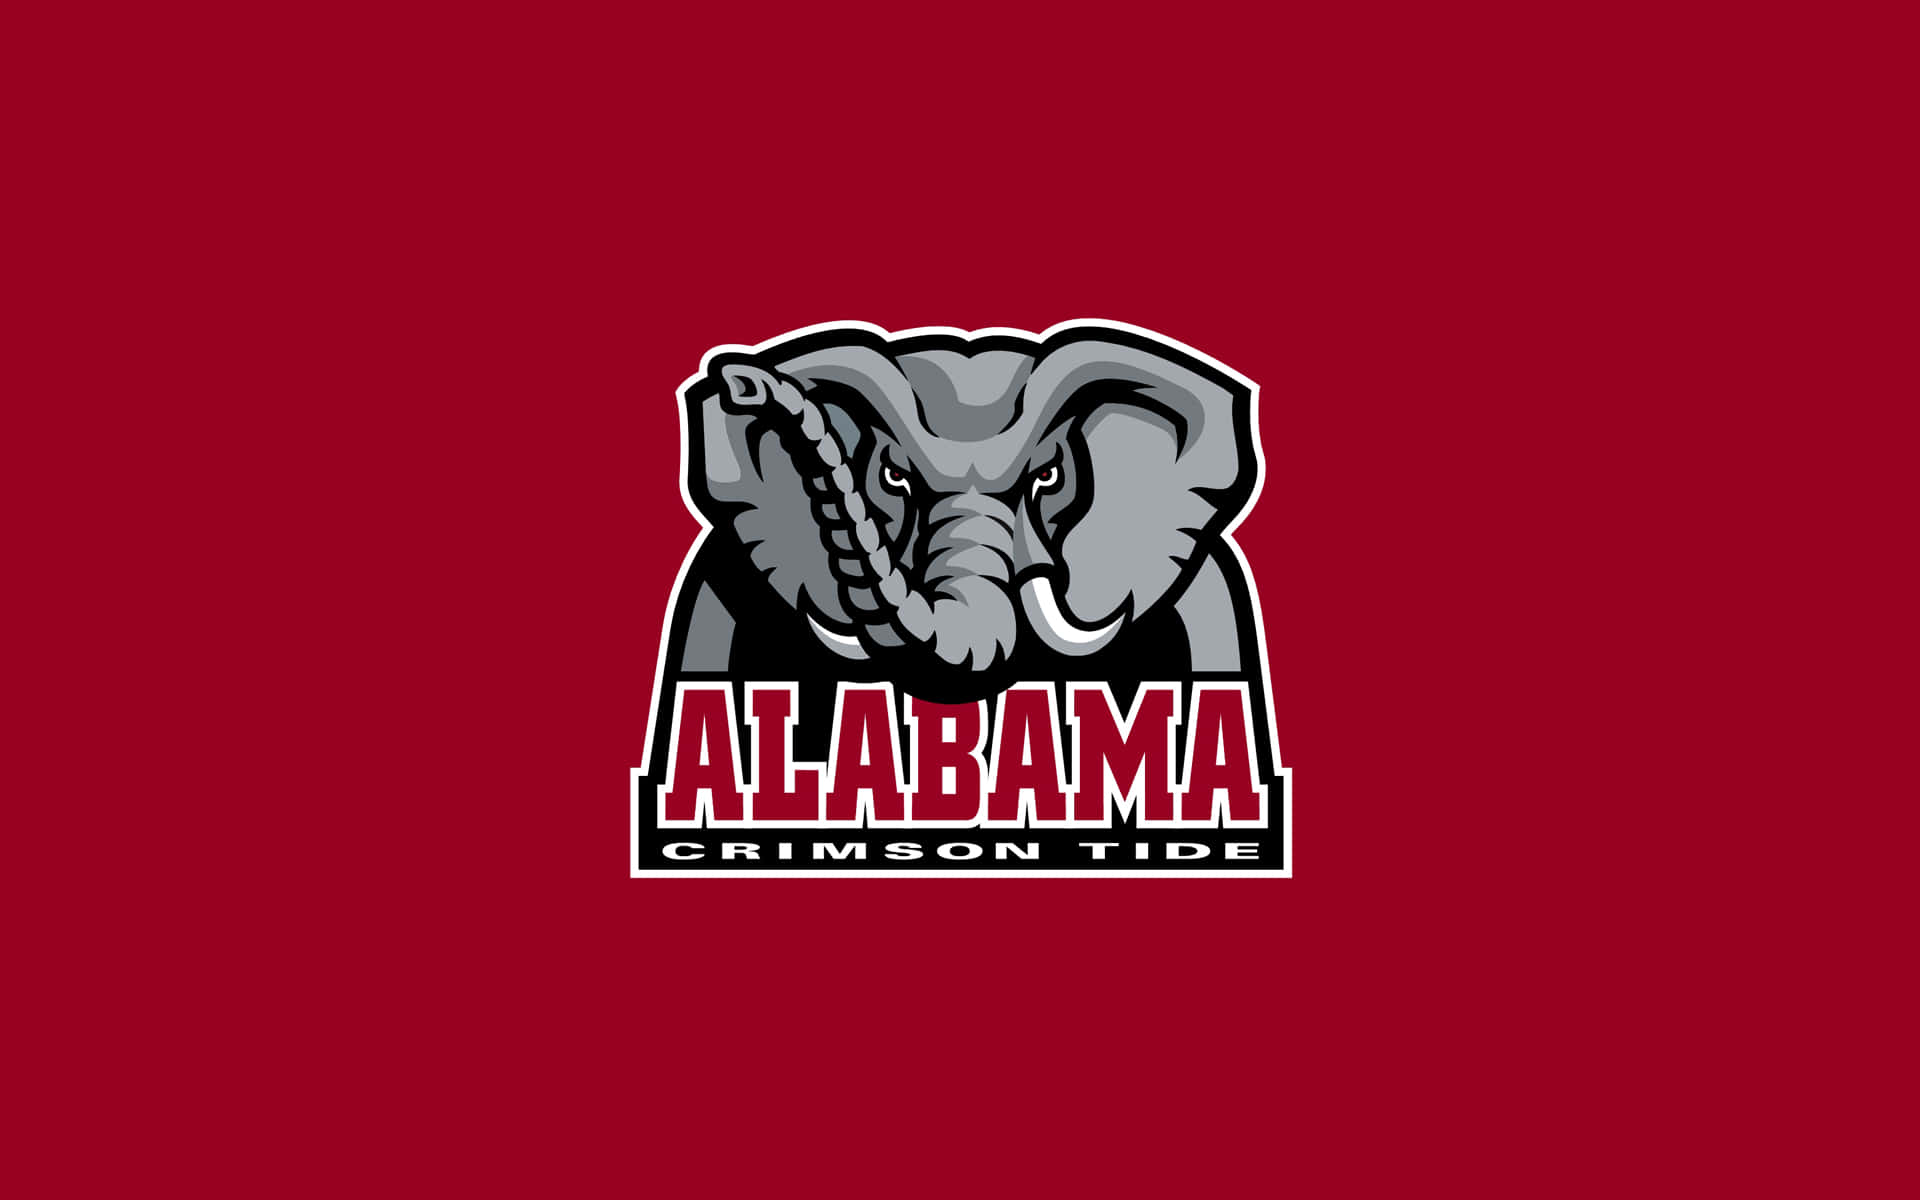 Lamarea Cremson Se Enorgullece De Respaldar El Logo De Alabama Football. Fondo de pantalla